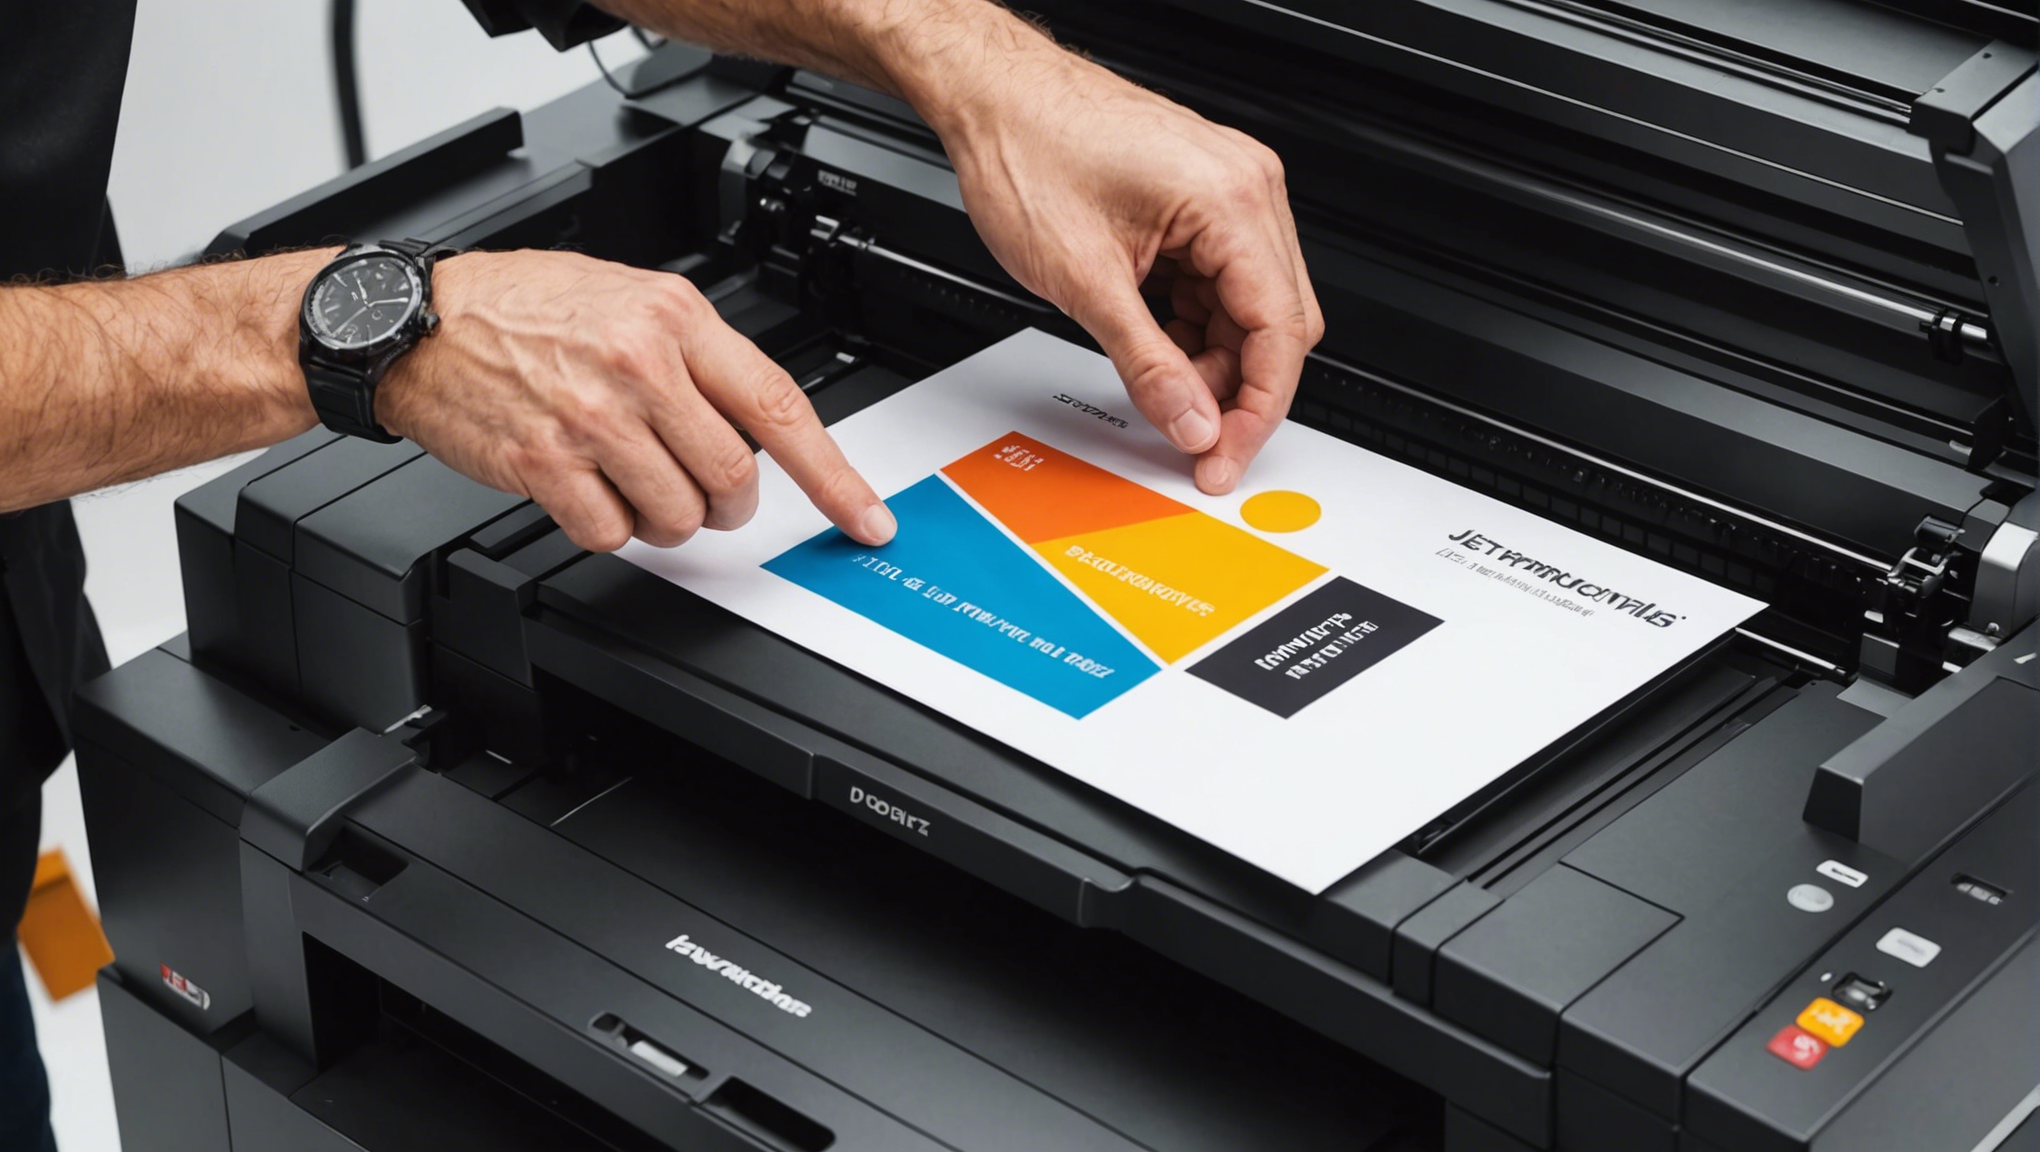 découvrez les avantages des imprimantes jet d'encre professionnelles à prix abordables pour une qualité d'impression exceptionnelle et des performances optimales.